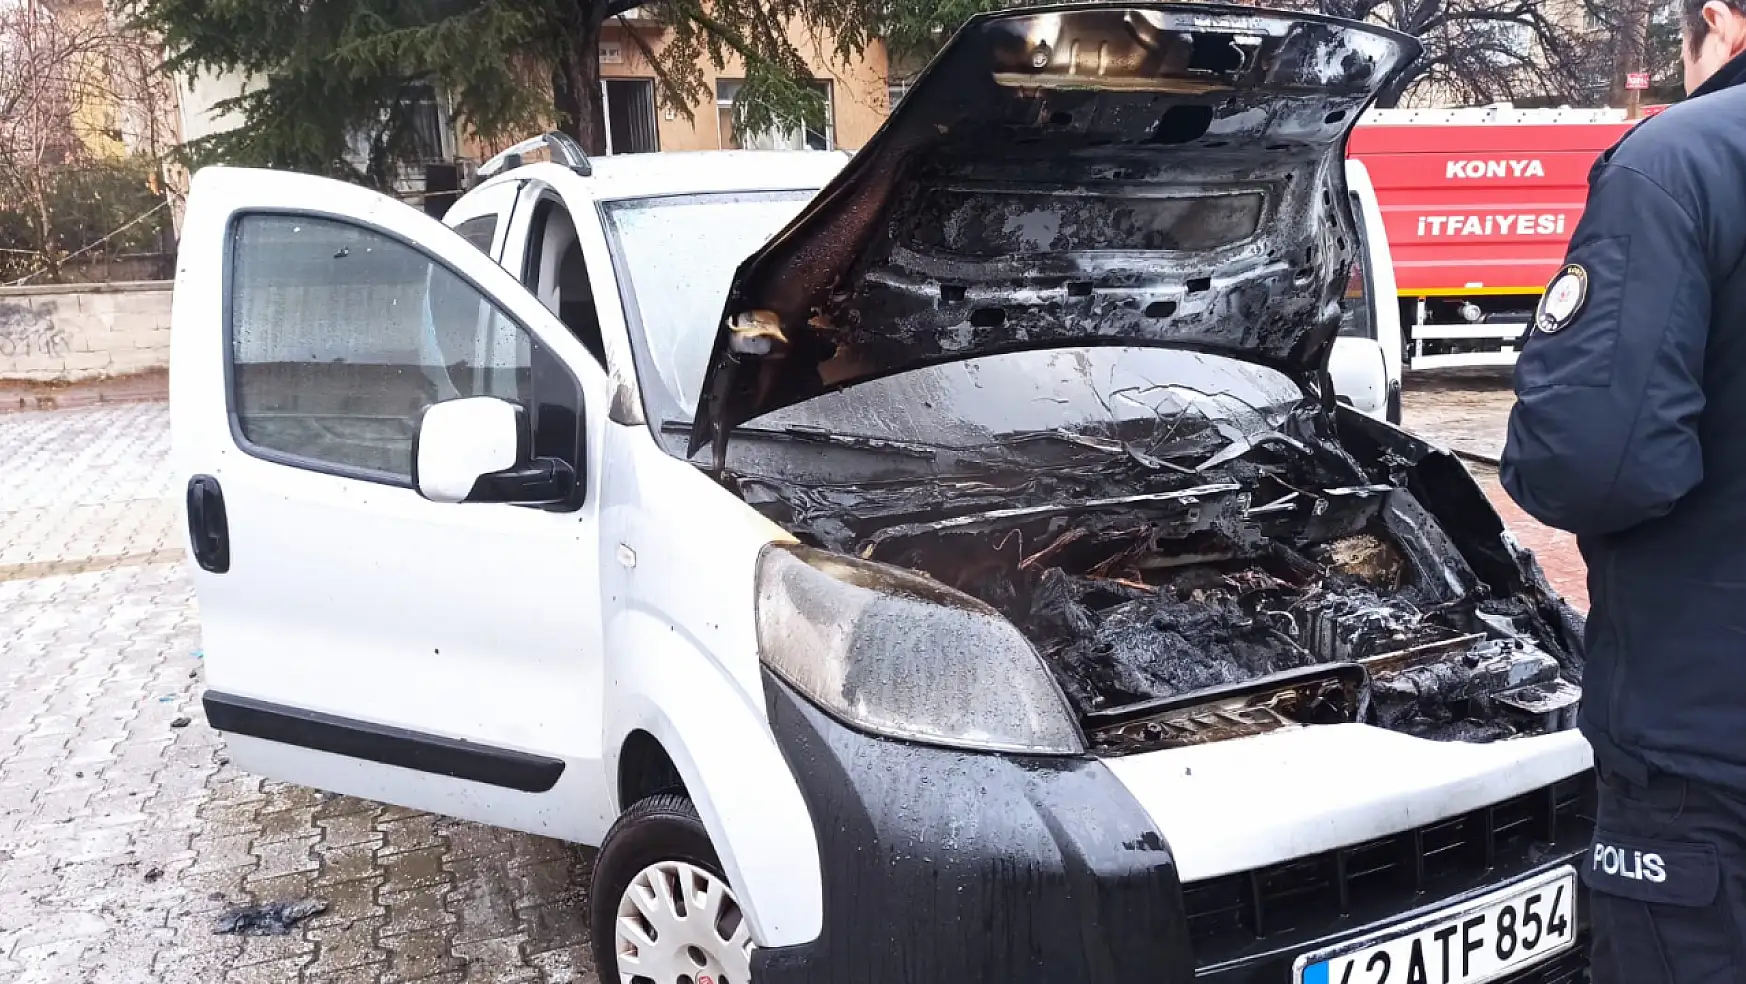 Konya'da park halindeki araç bilinmeyen bir nedenle yandı!